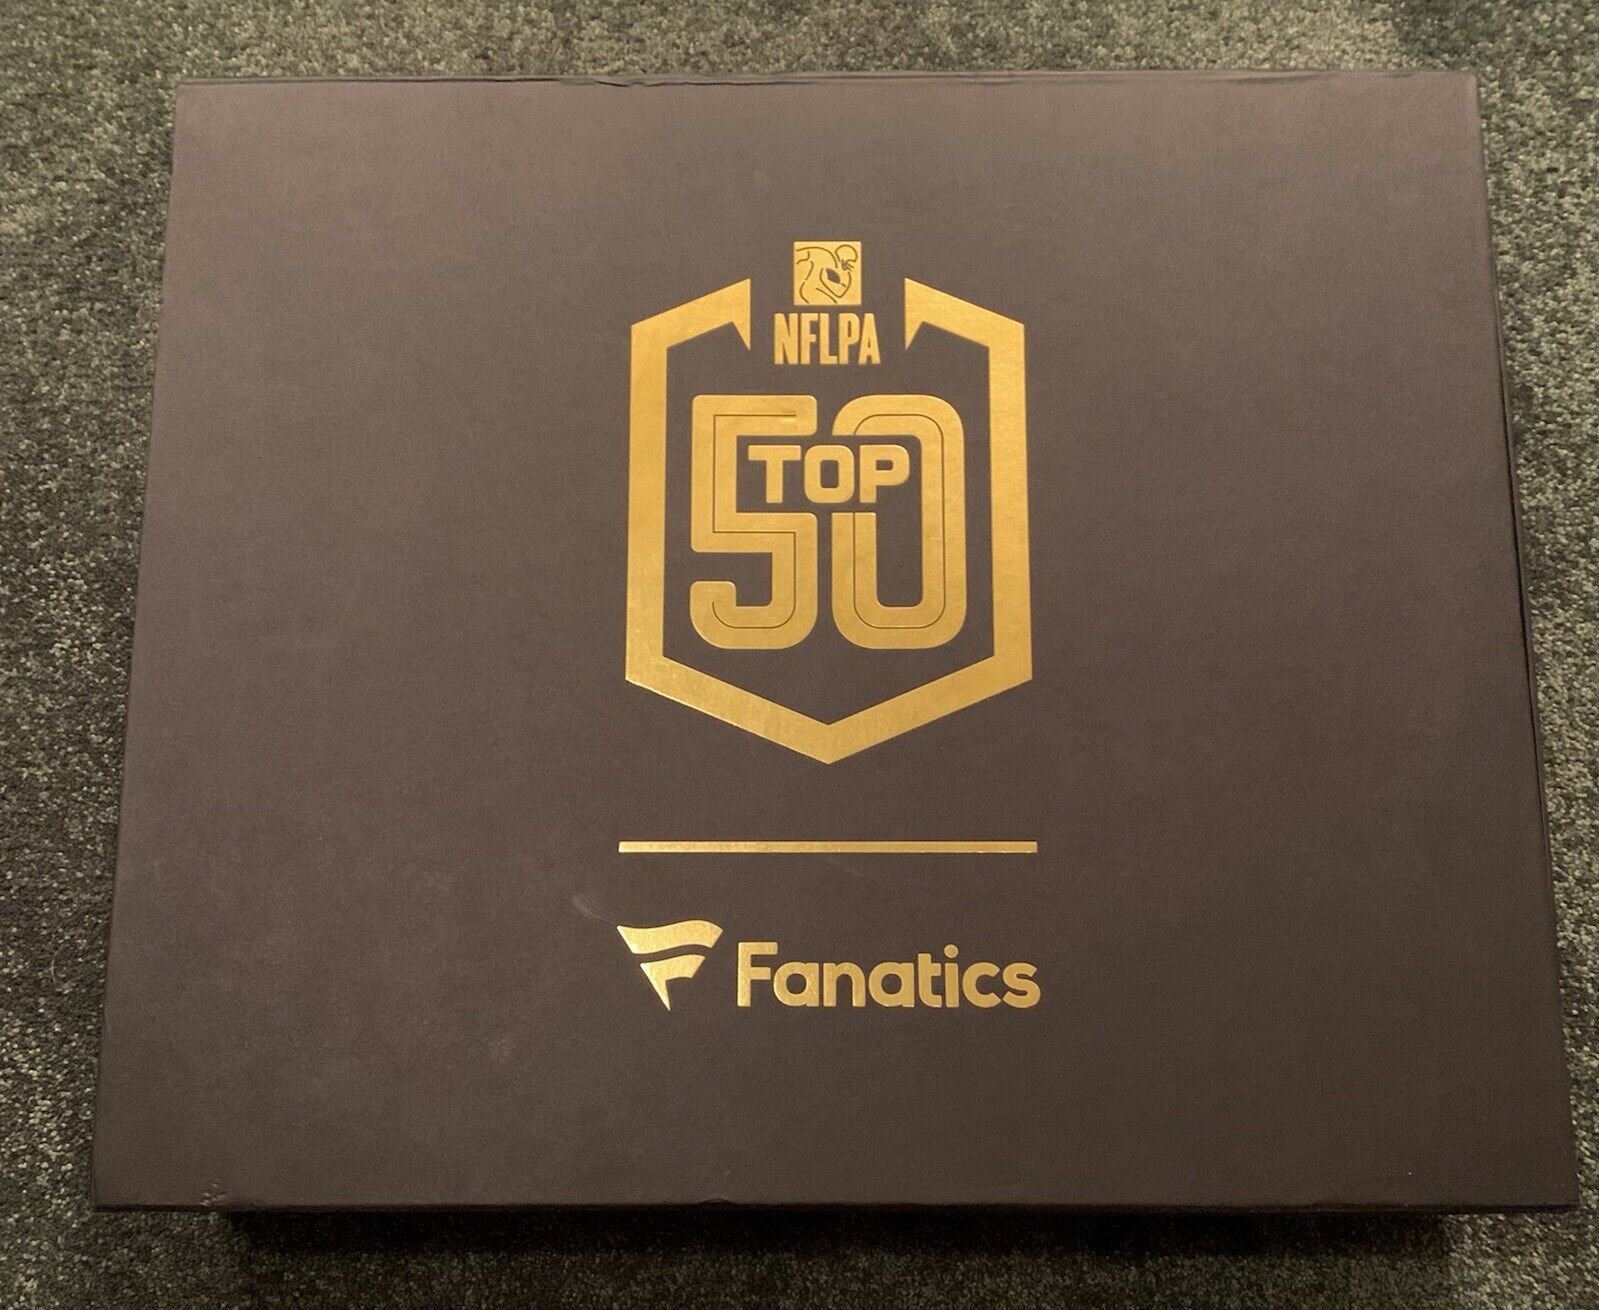 **RARE** Matthew Stafford Fanatics NFL PA 2018 Top 50 NFL Jersey Sales Award